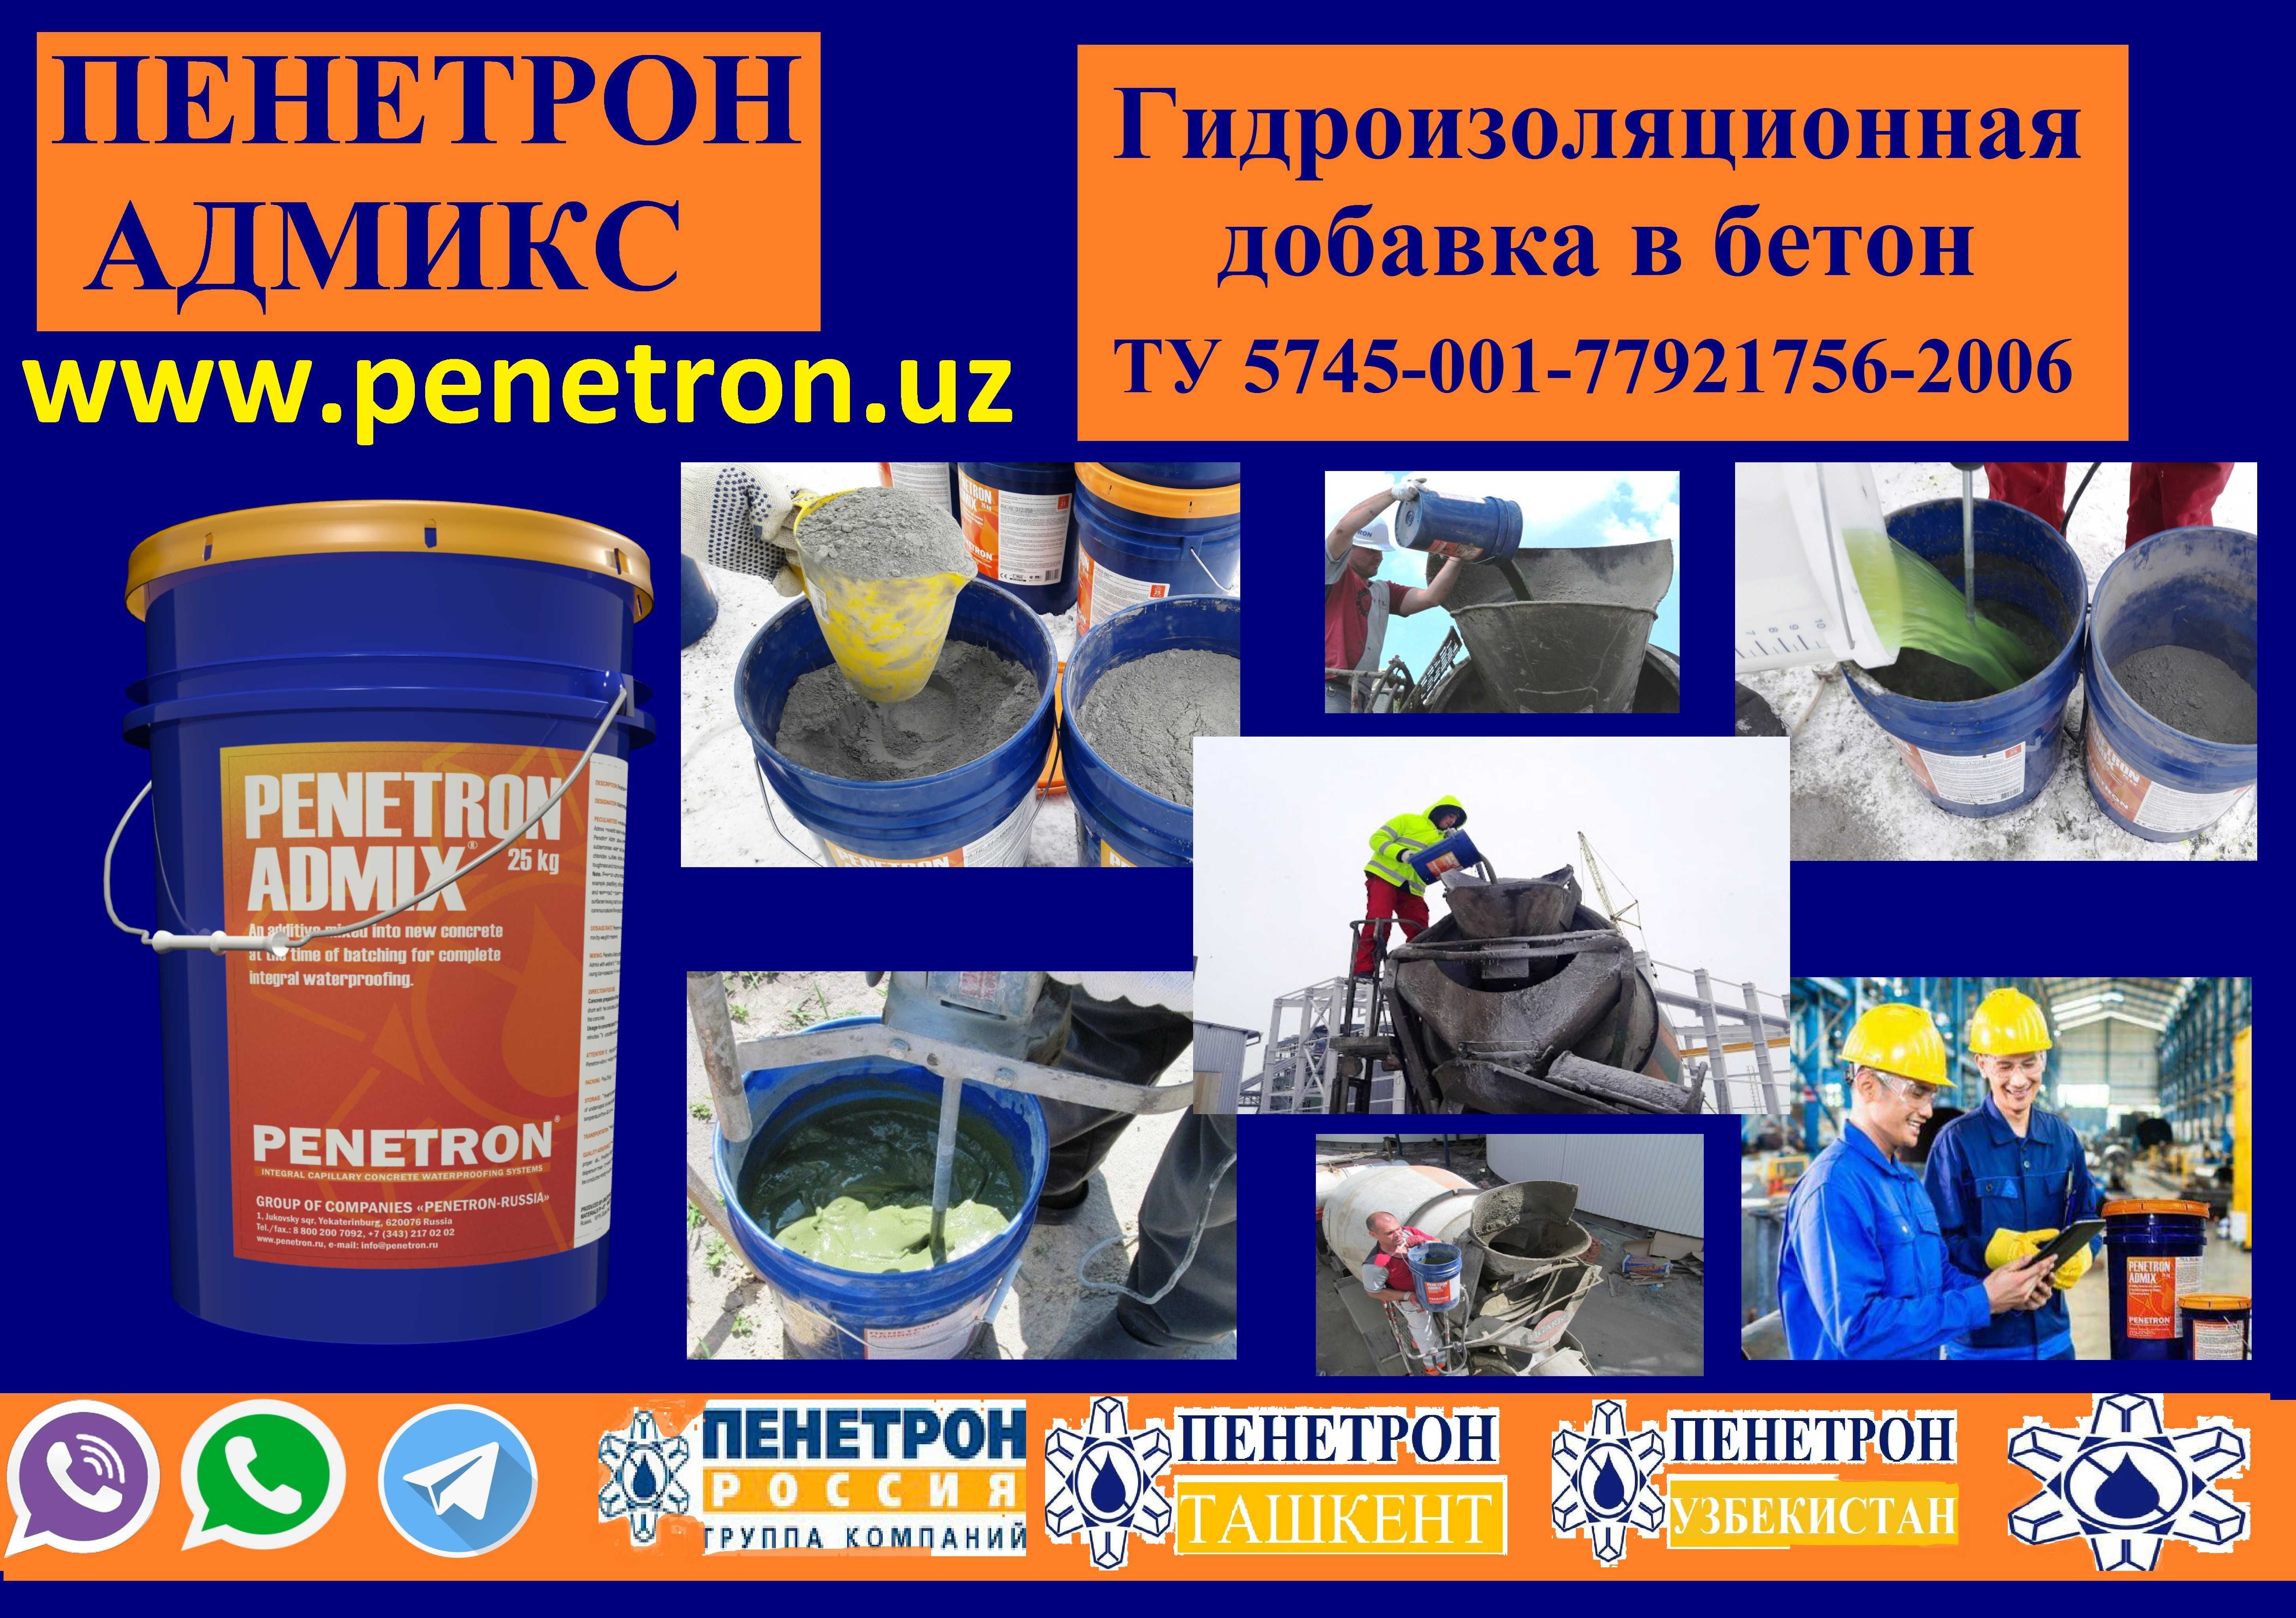 Гидроизоляционная добавка в бетон Пенетрон Адмикс Гидроизоляция